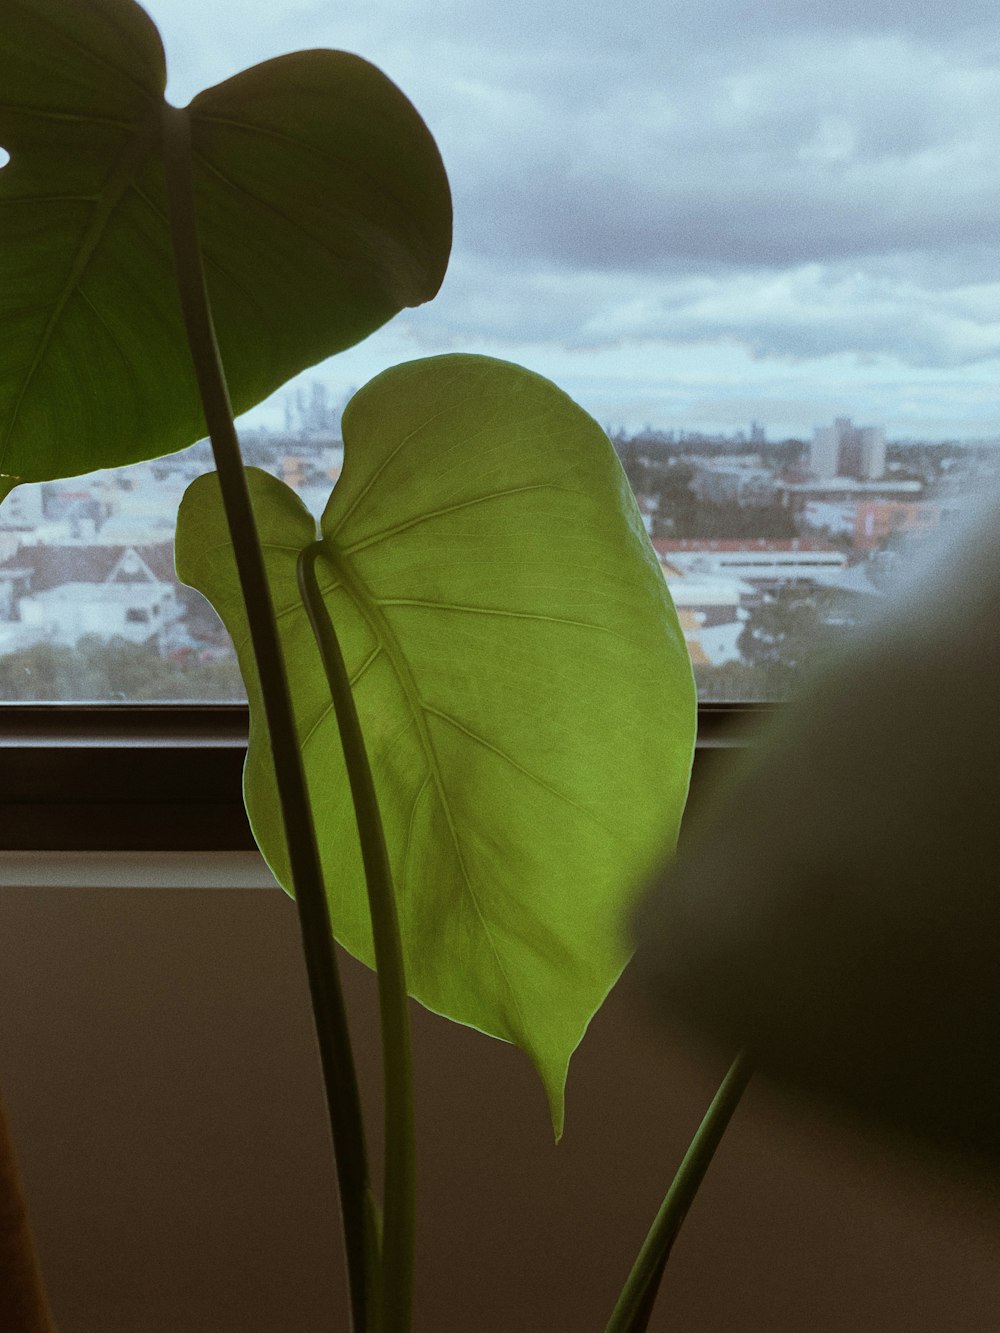 green leaf plant near window